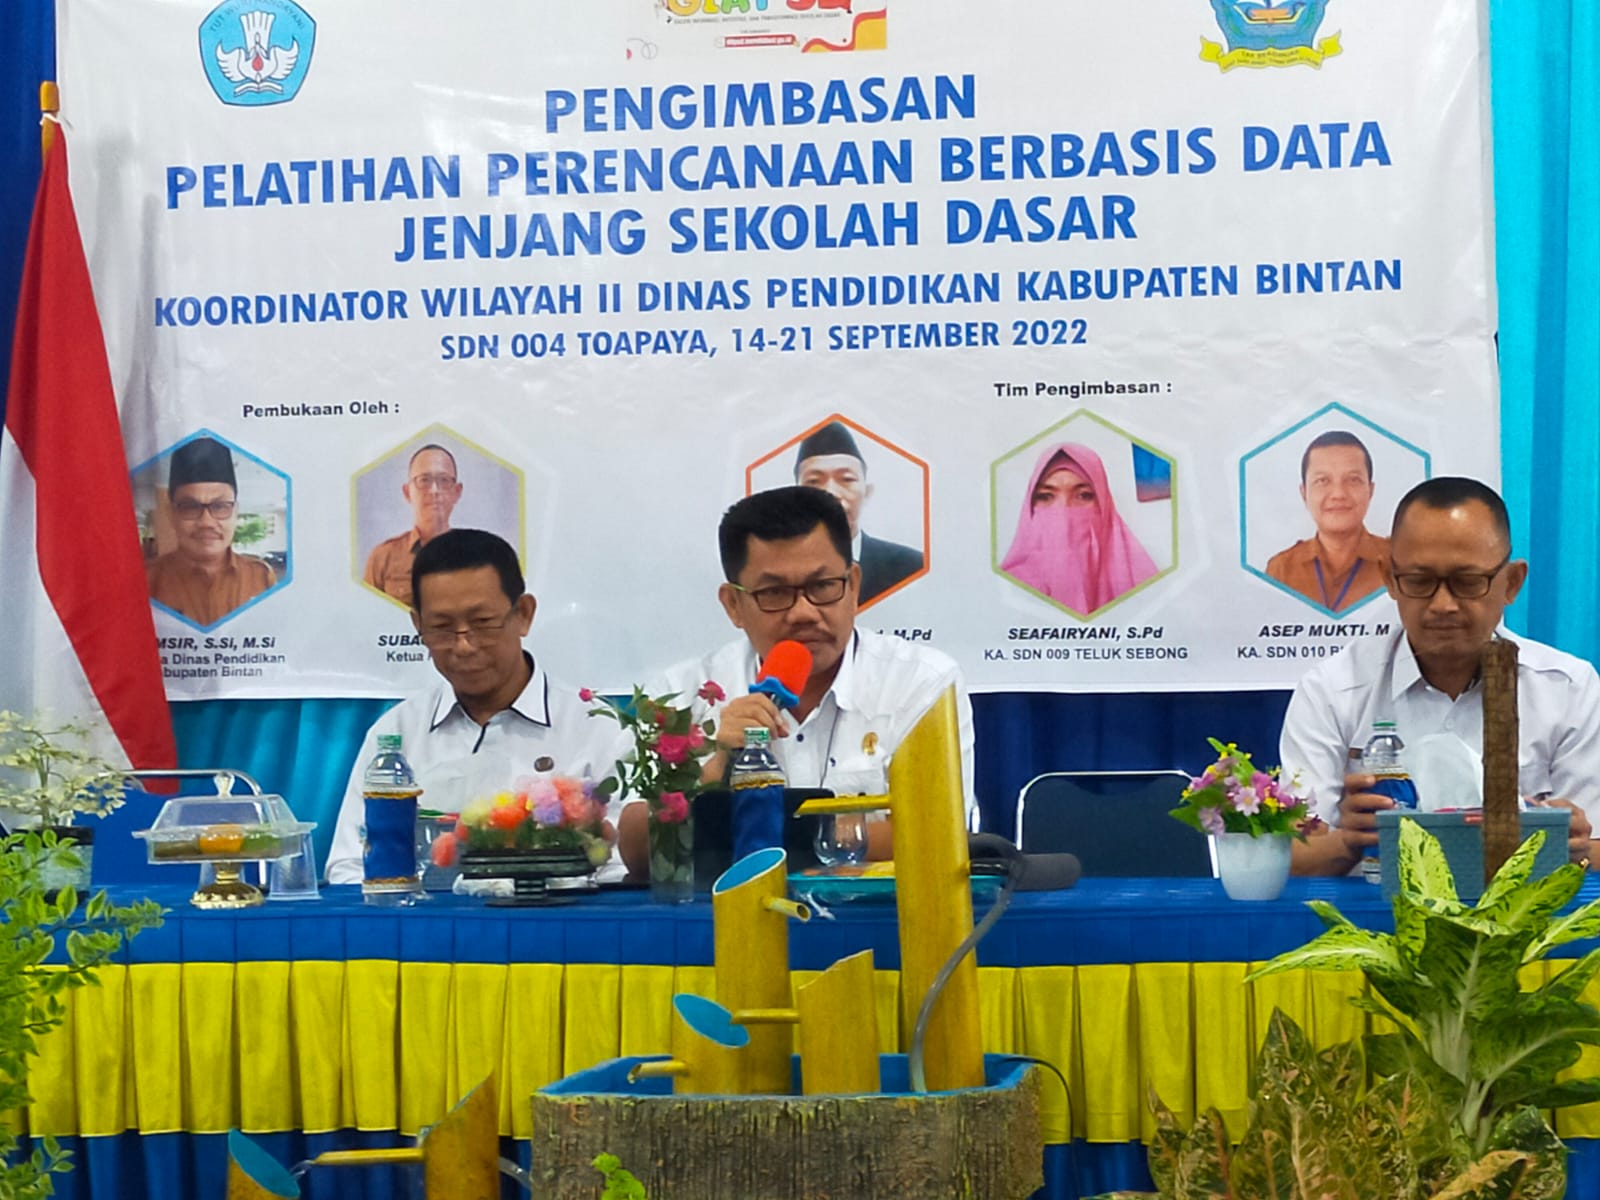 Dinas Pendidikan Kabupaten Bintan menyelenggarakan Workshop Perencanaan Berbasis Data jenjang Sekolah Dasar se Kabupaten Bintan